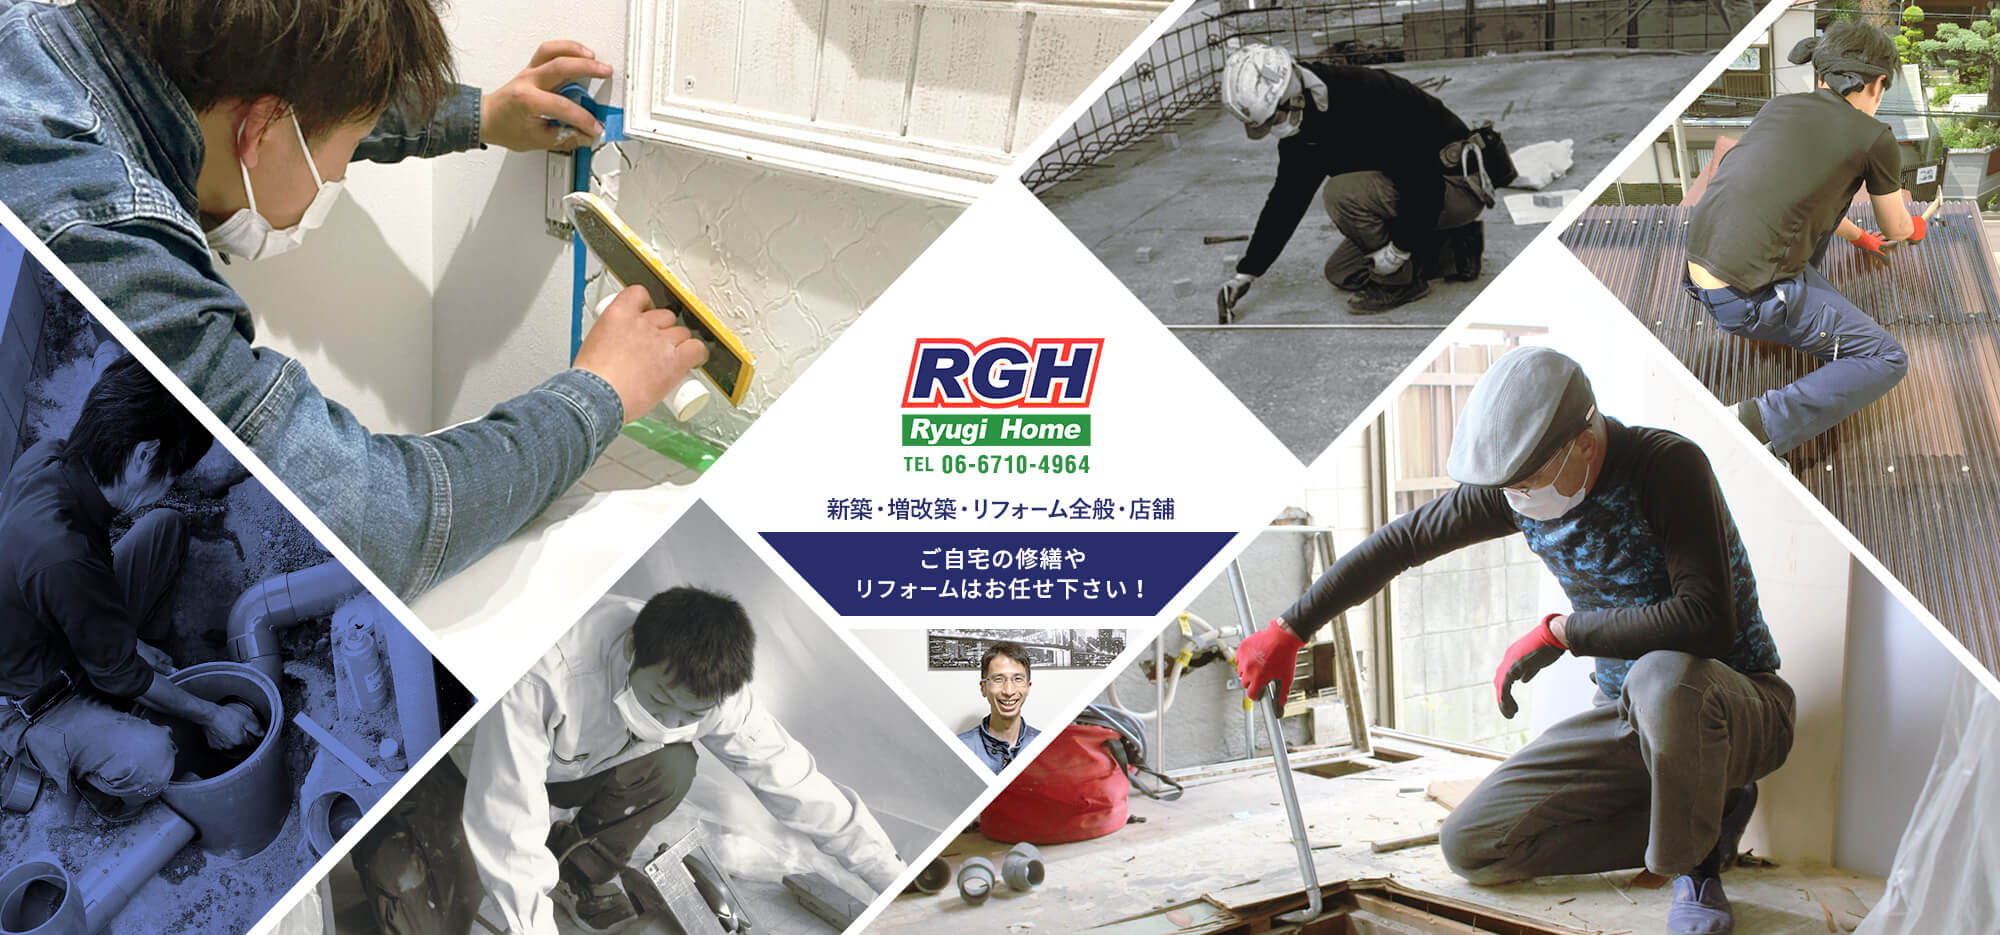 RGH Ryuji Home TEL06-6710-4964 キッチン・リビング・ダイニング・浴室・トイレ・洗面所・外構 ご自宅の修繕やリフォームはお任せください！